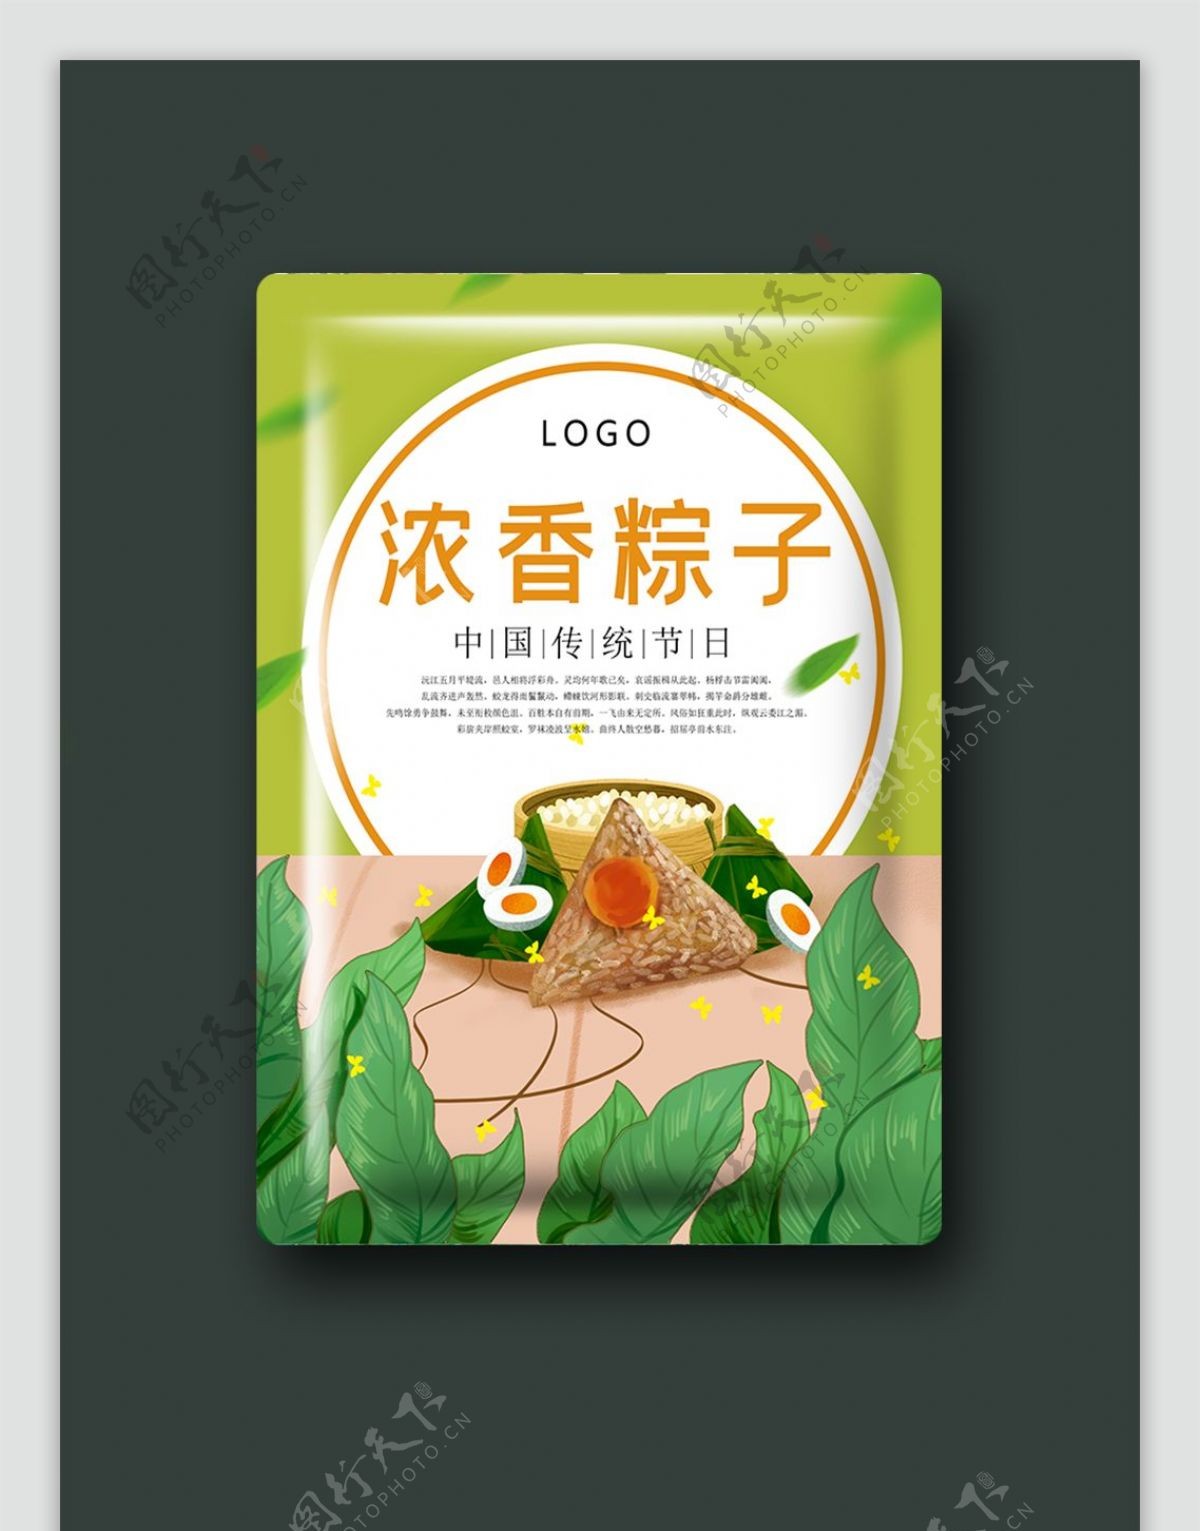 简约中国风端午节粽子包装设计